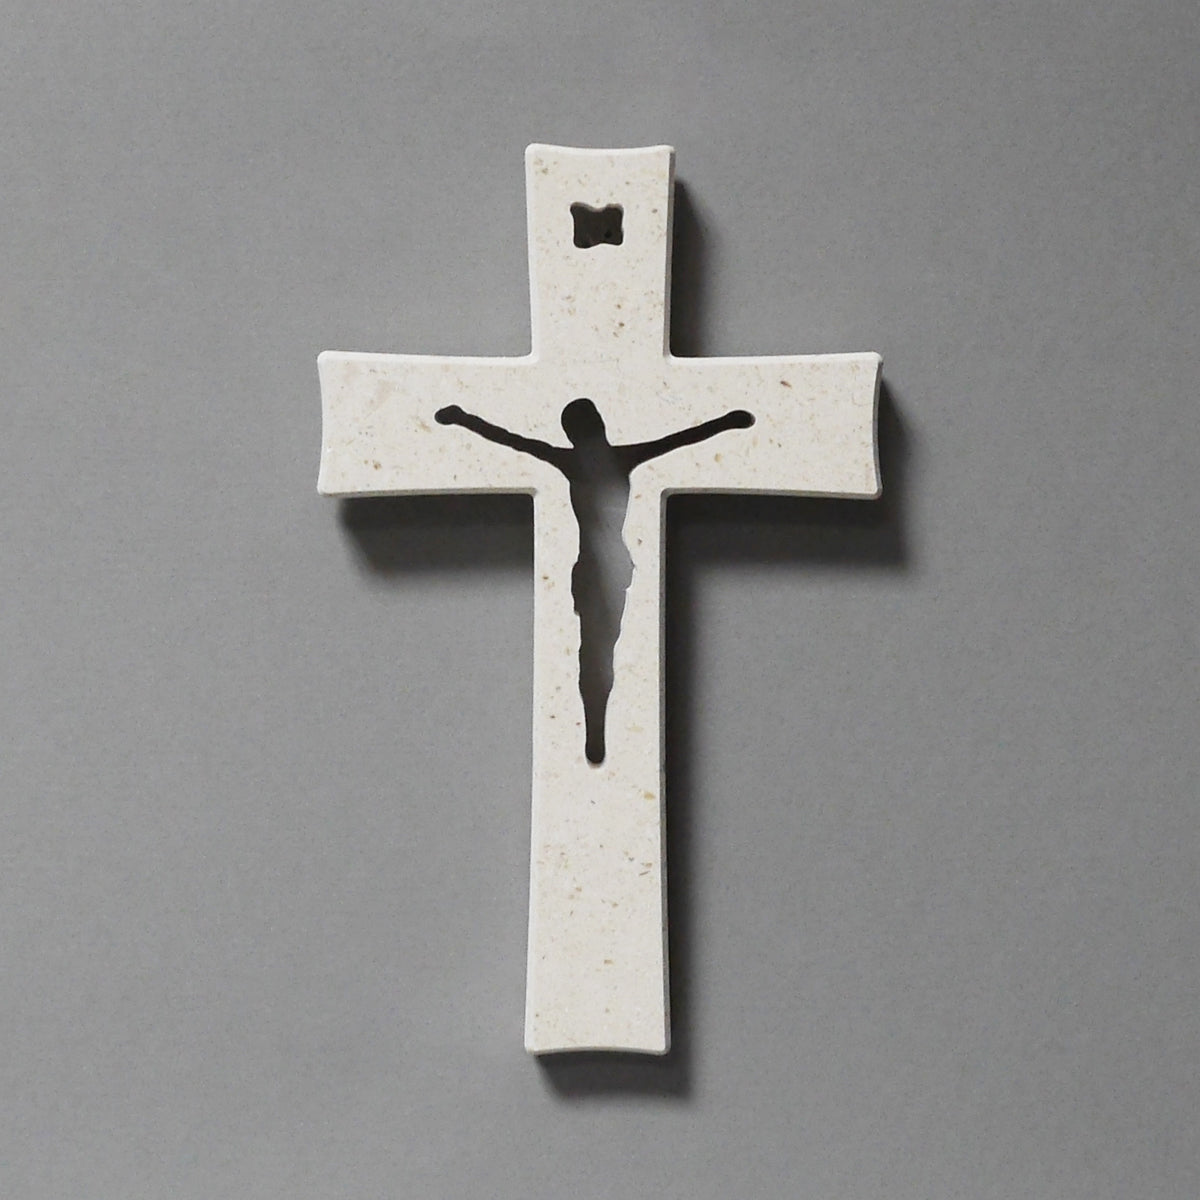 Pierced wall cross